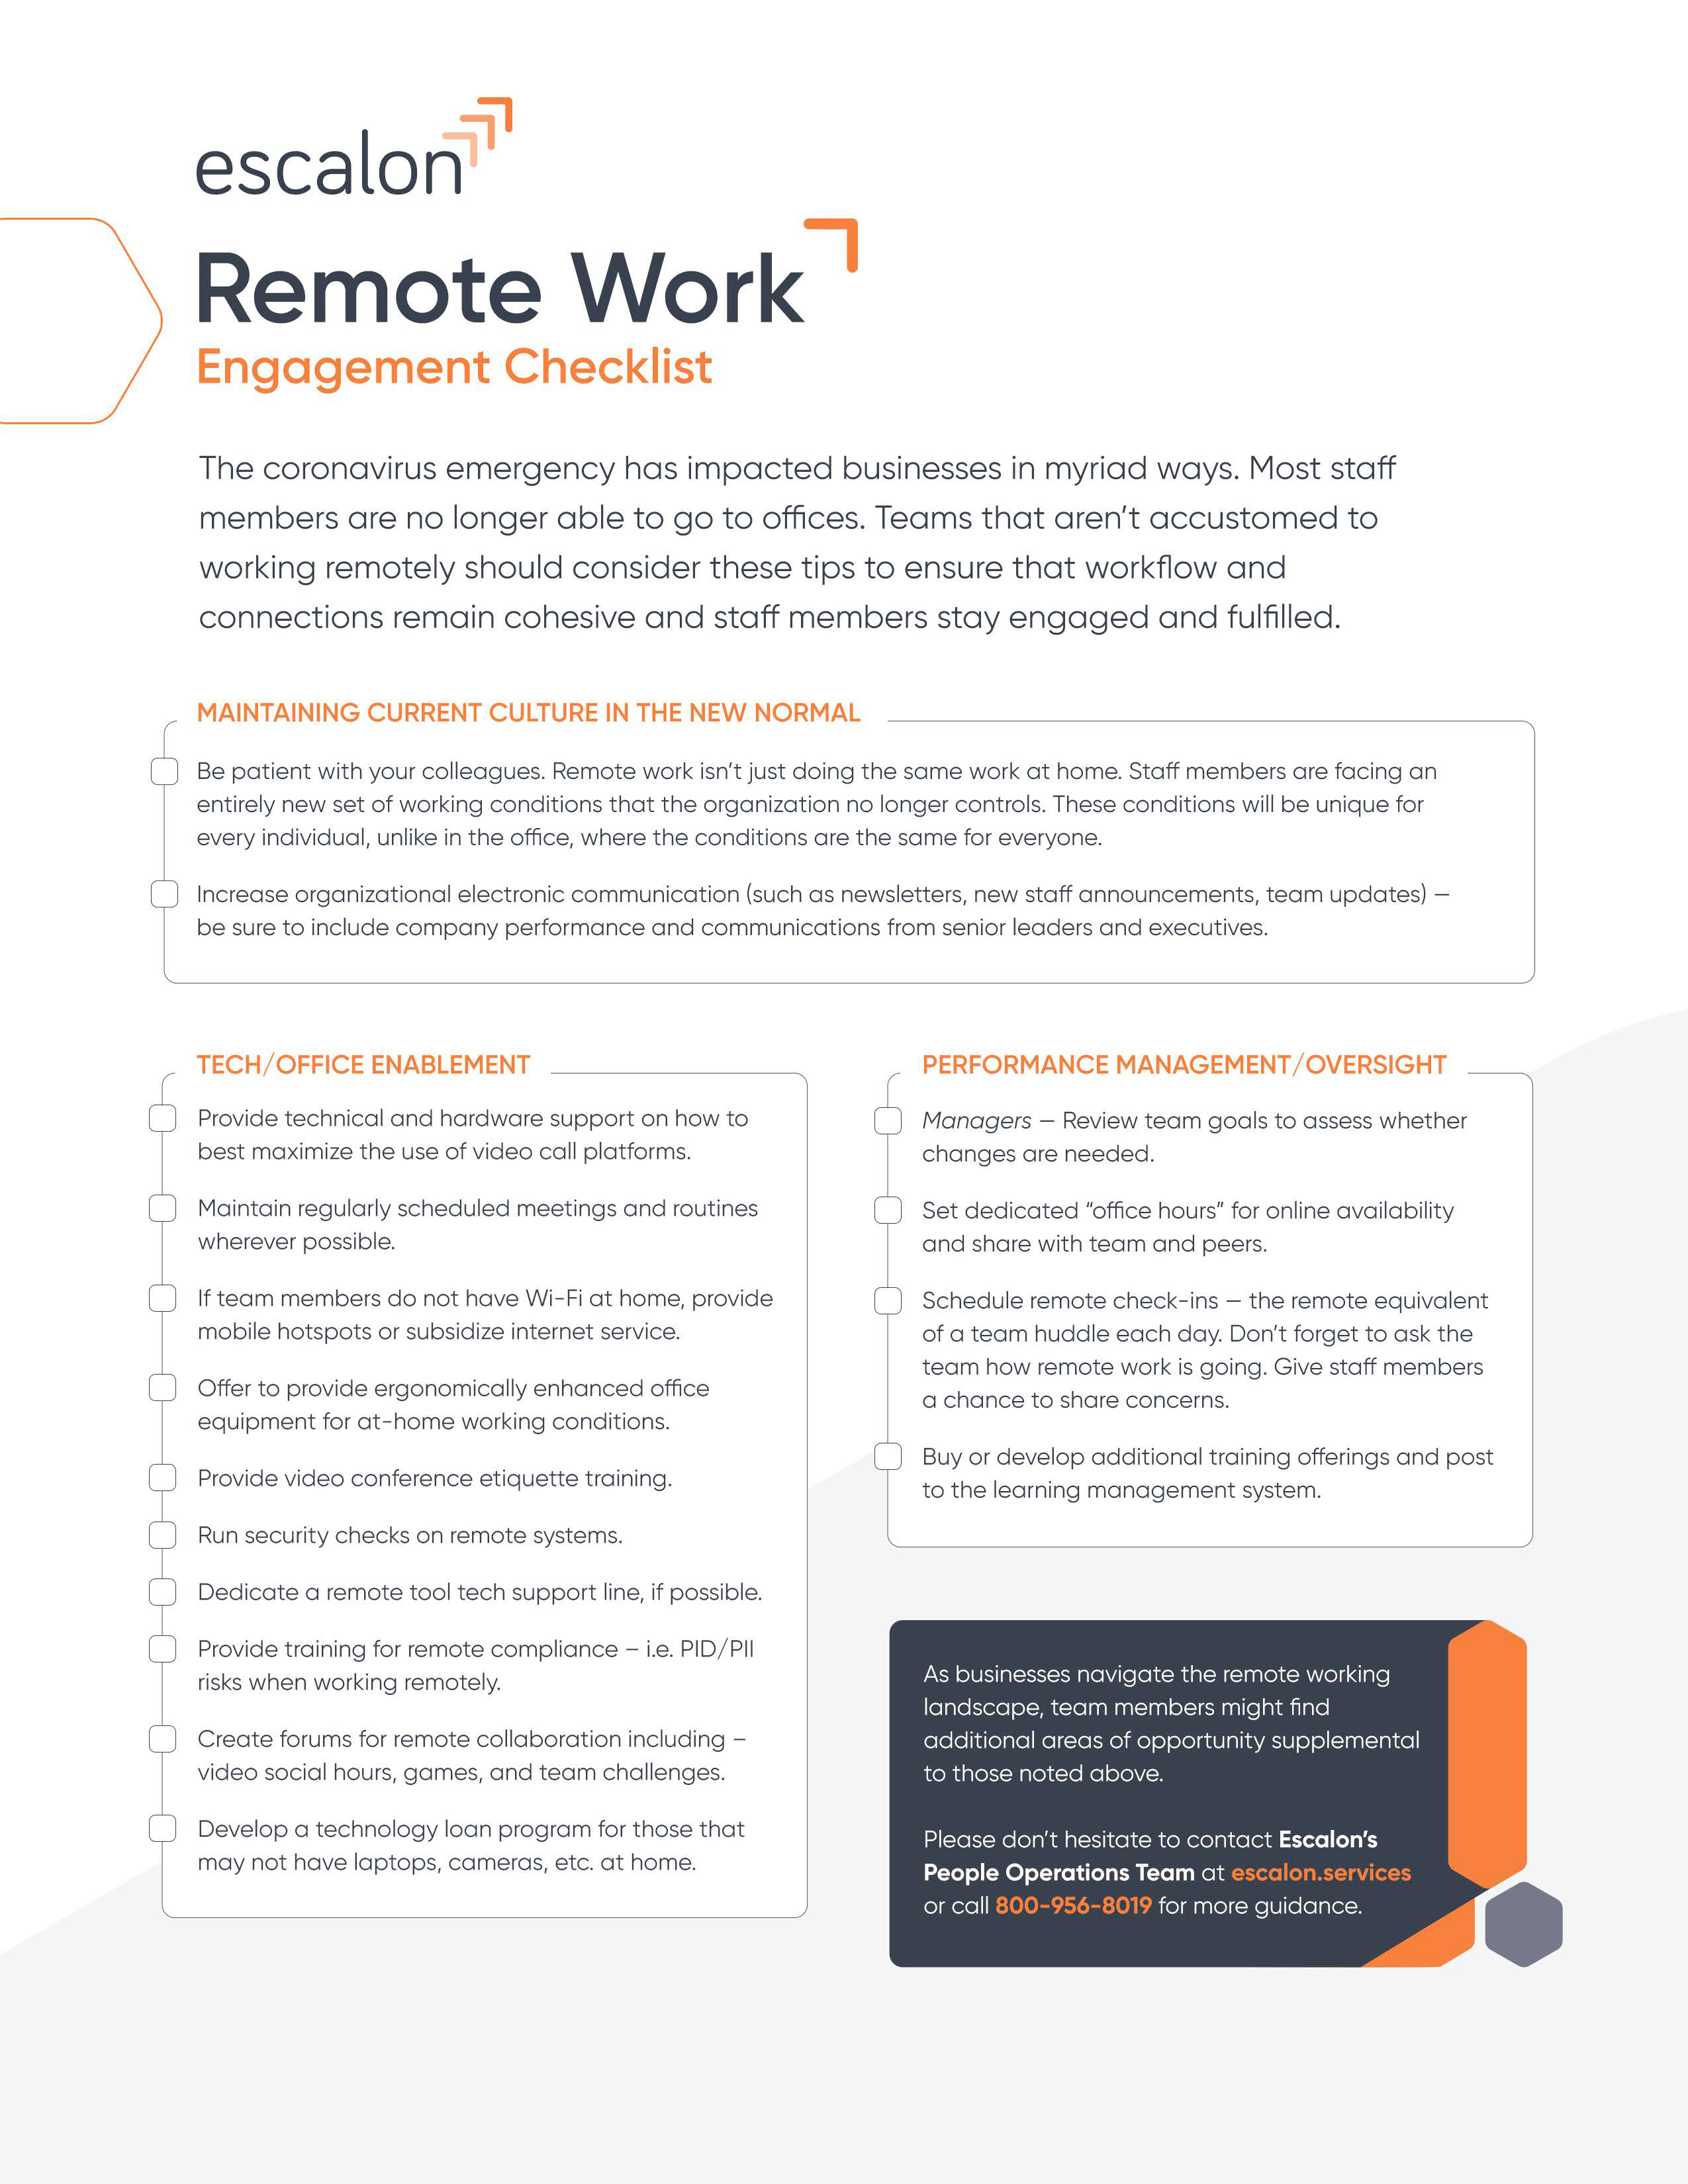 Remote working checklist